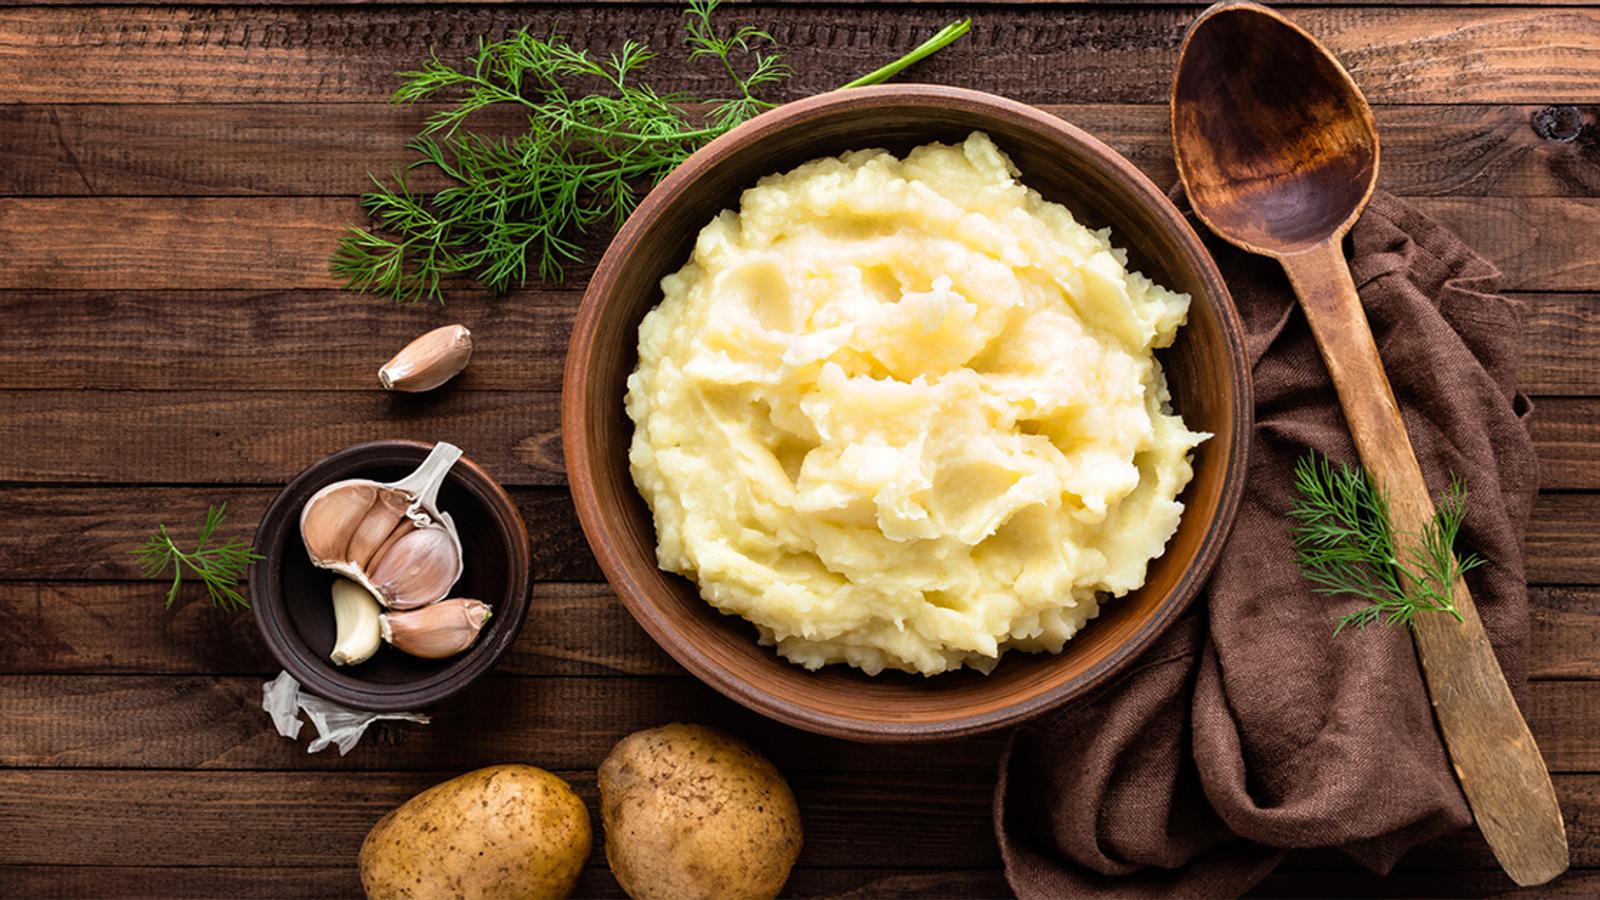 Ces quelques conseils vous éviteront de vous retrouver avec une purée de pommes de terre grisâtre ou trop collante.